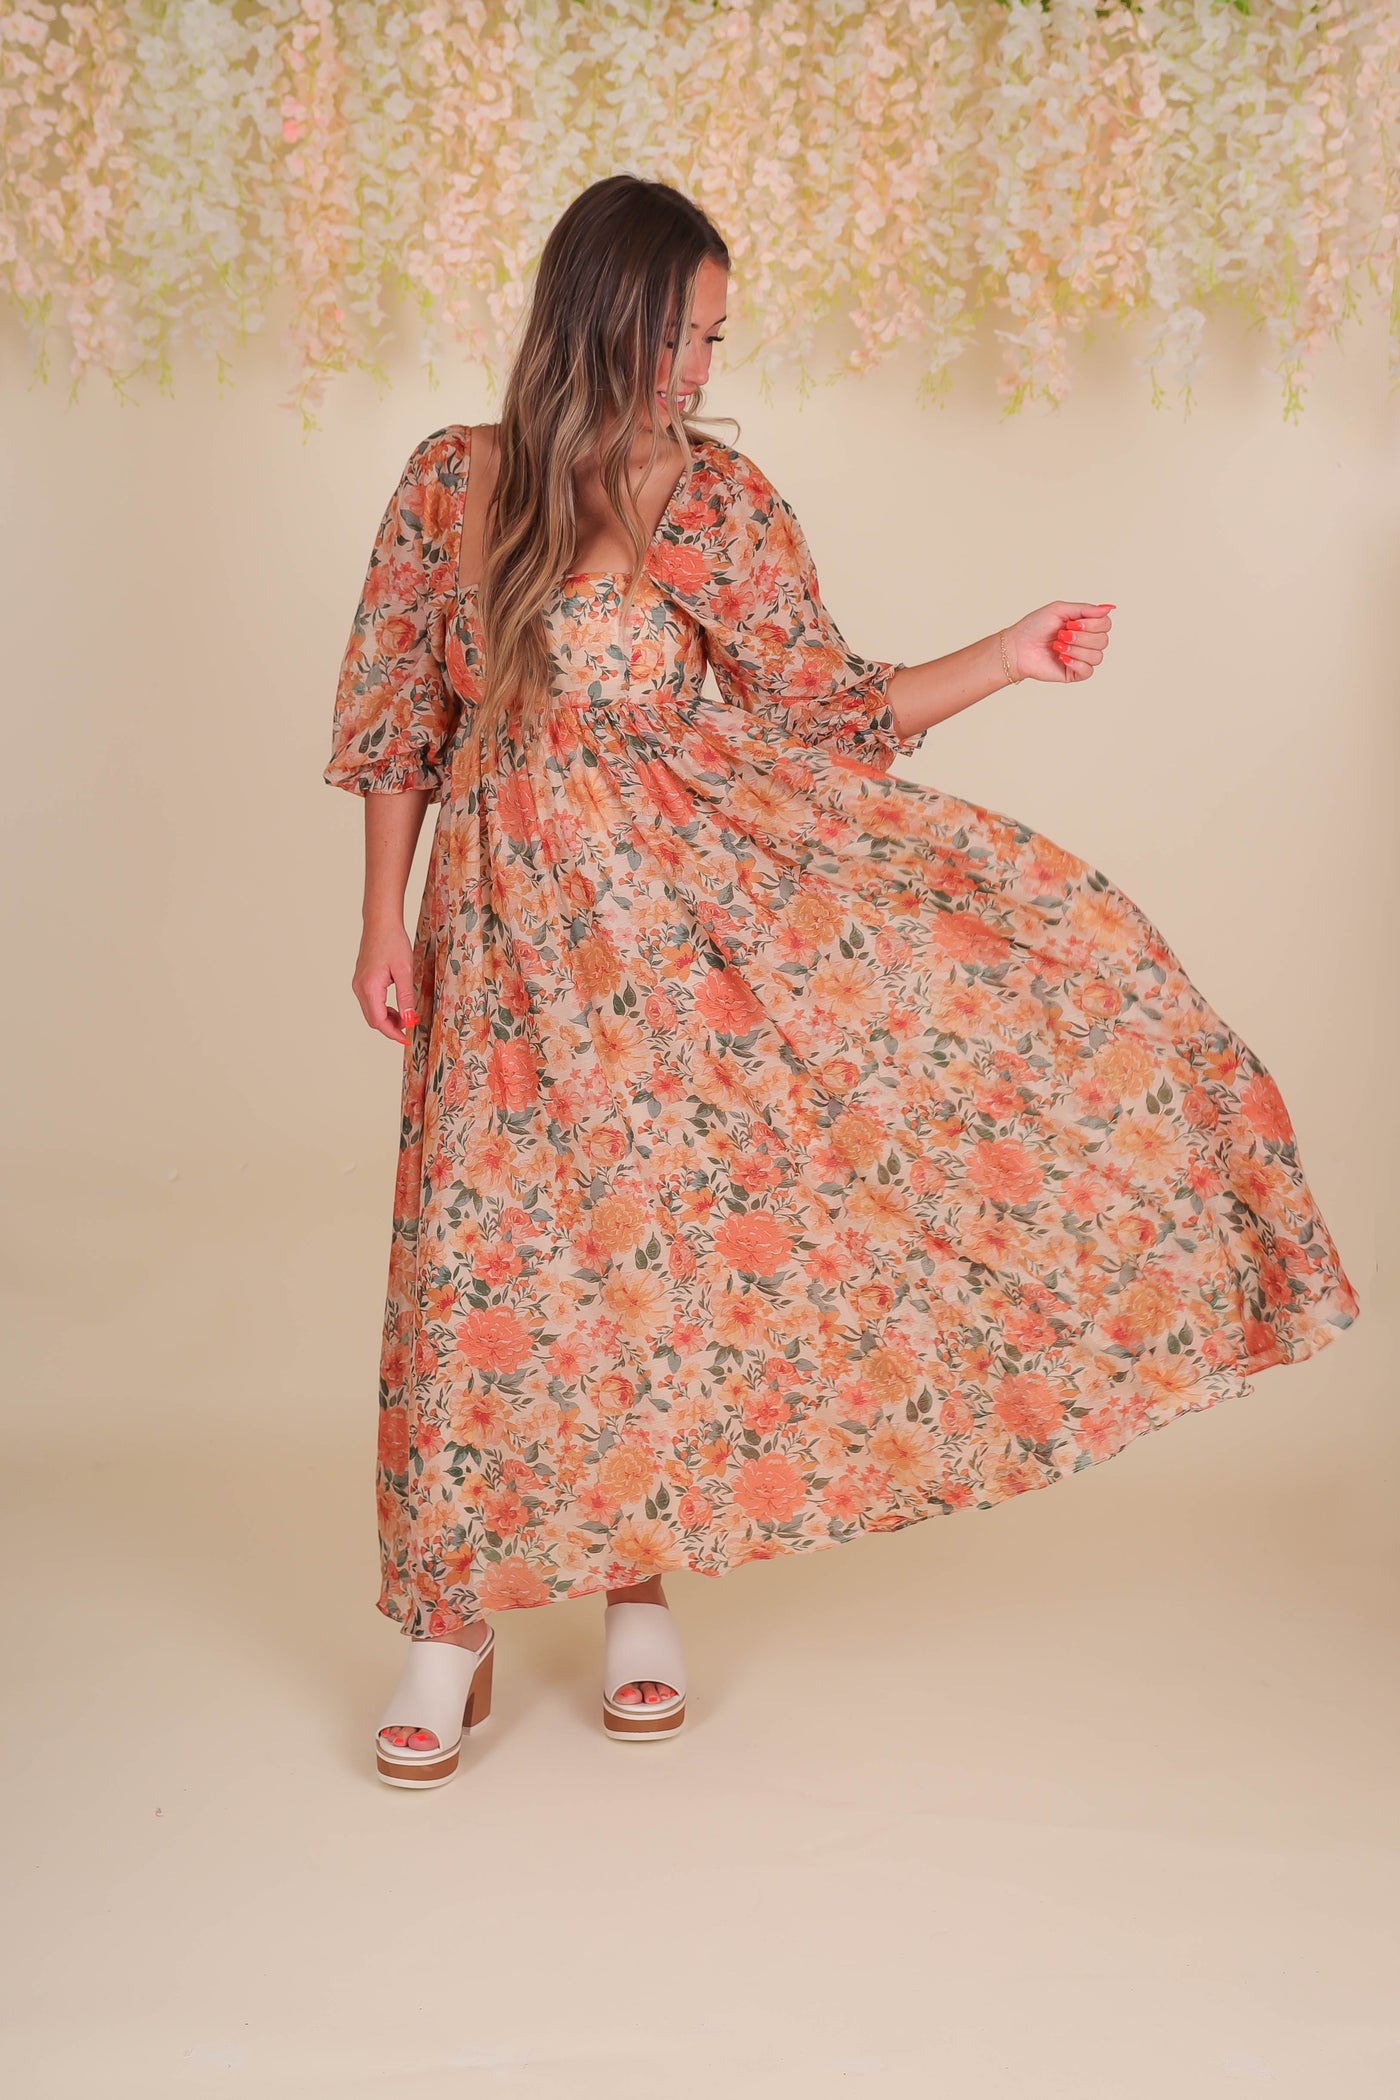 Women's Fall Floral Midi Dress- Beautiful Midi Dress- Storia Flower Dress